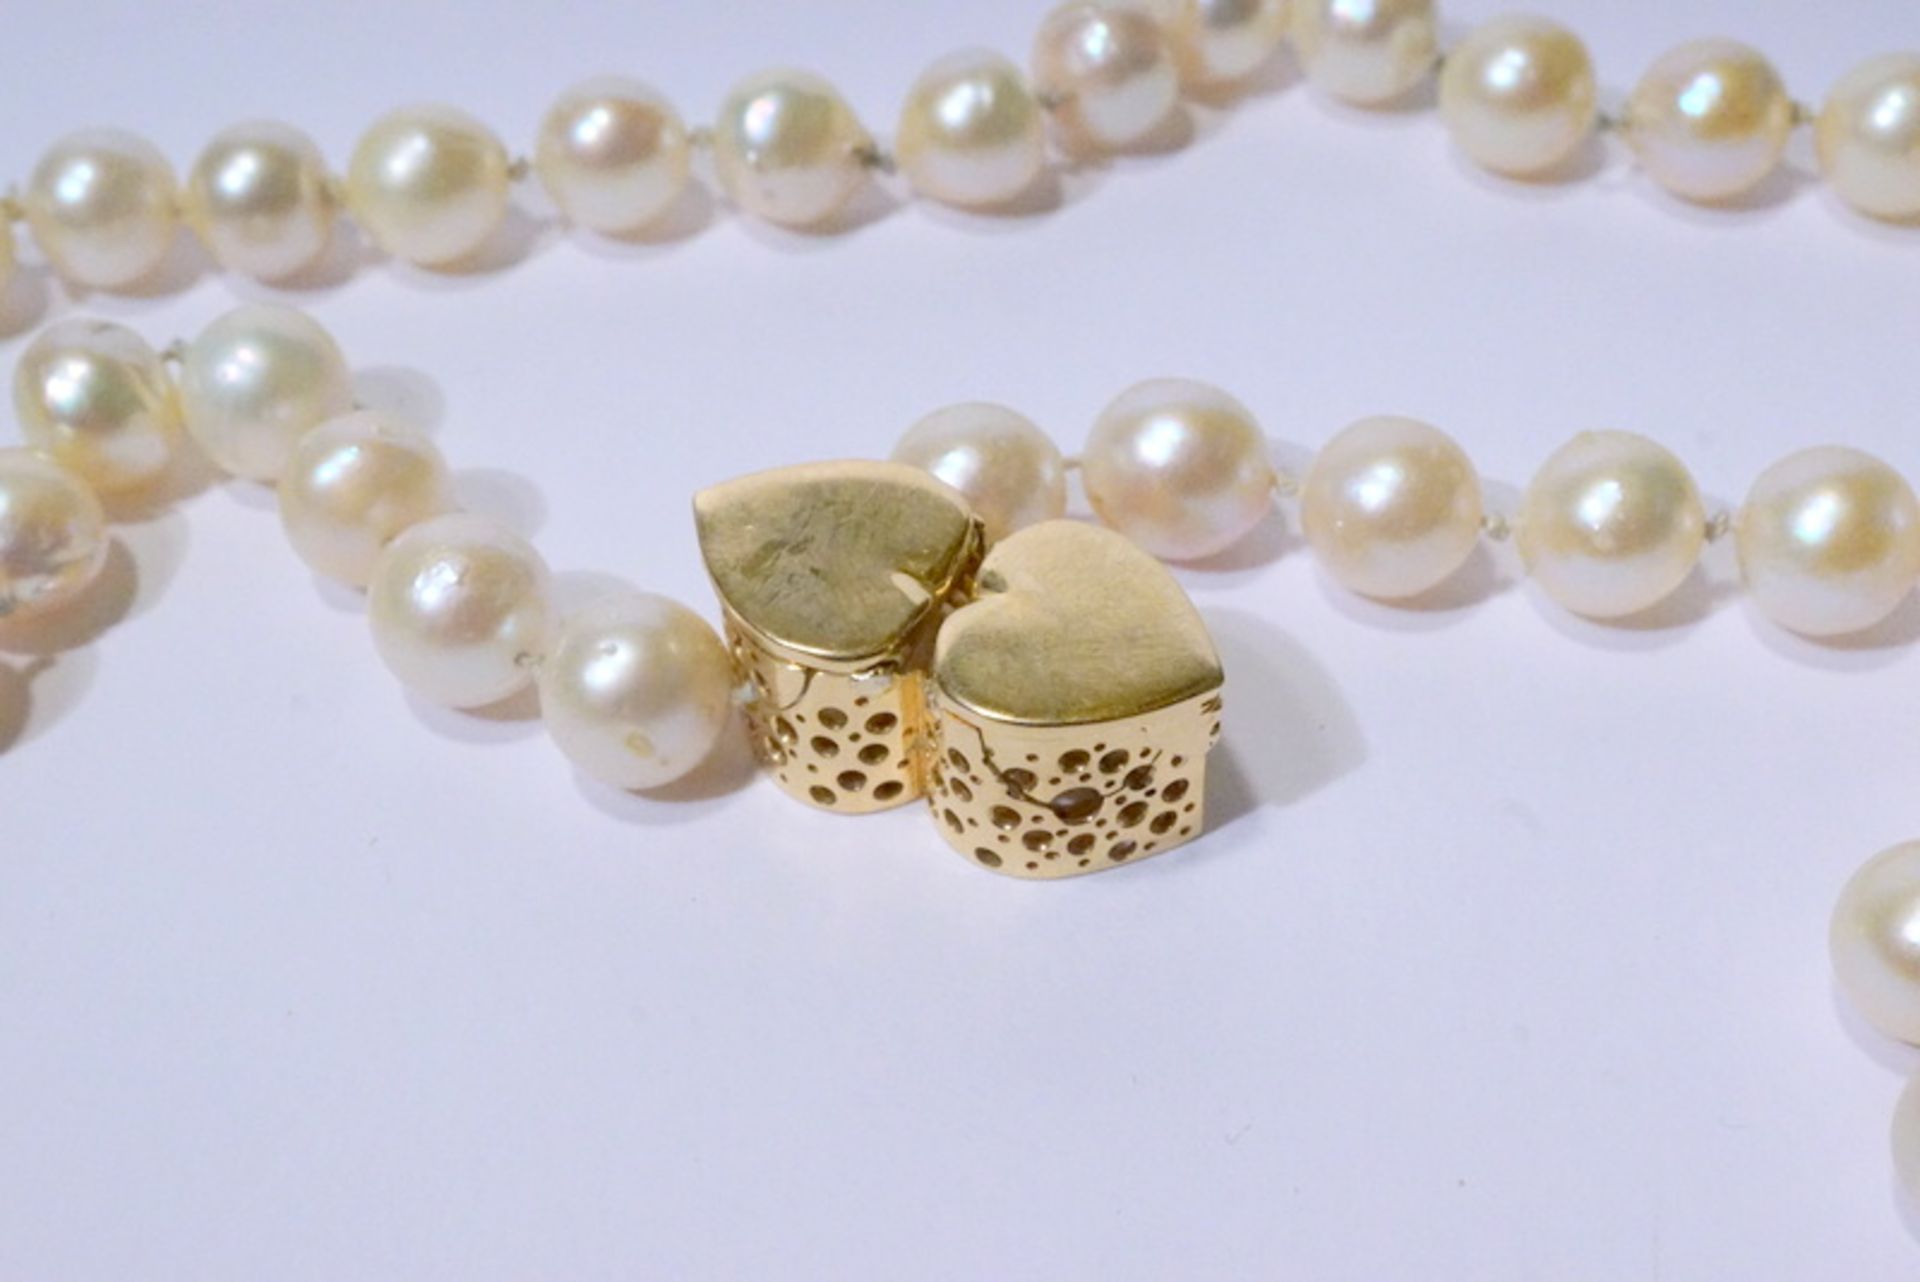 Südsseeperlenkette mit 80 Perlen à 1cm und 750er Schliessechampagnerfarben, von guter Qualität, - Image 2 of 2